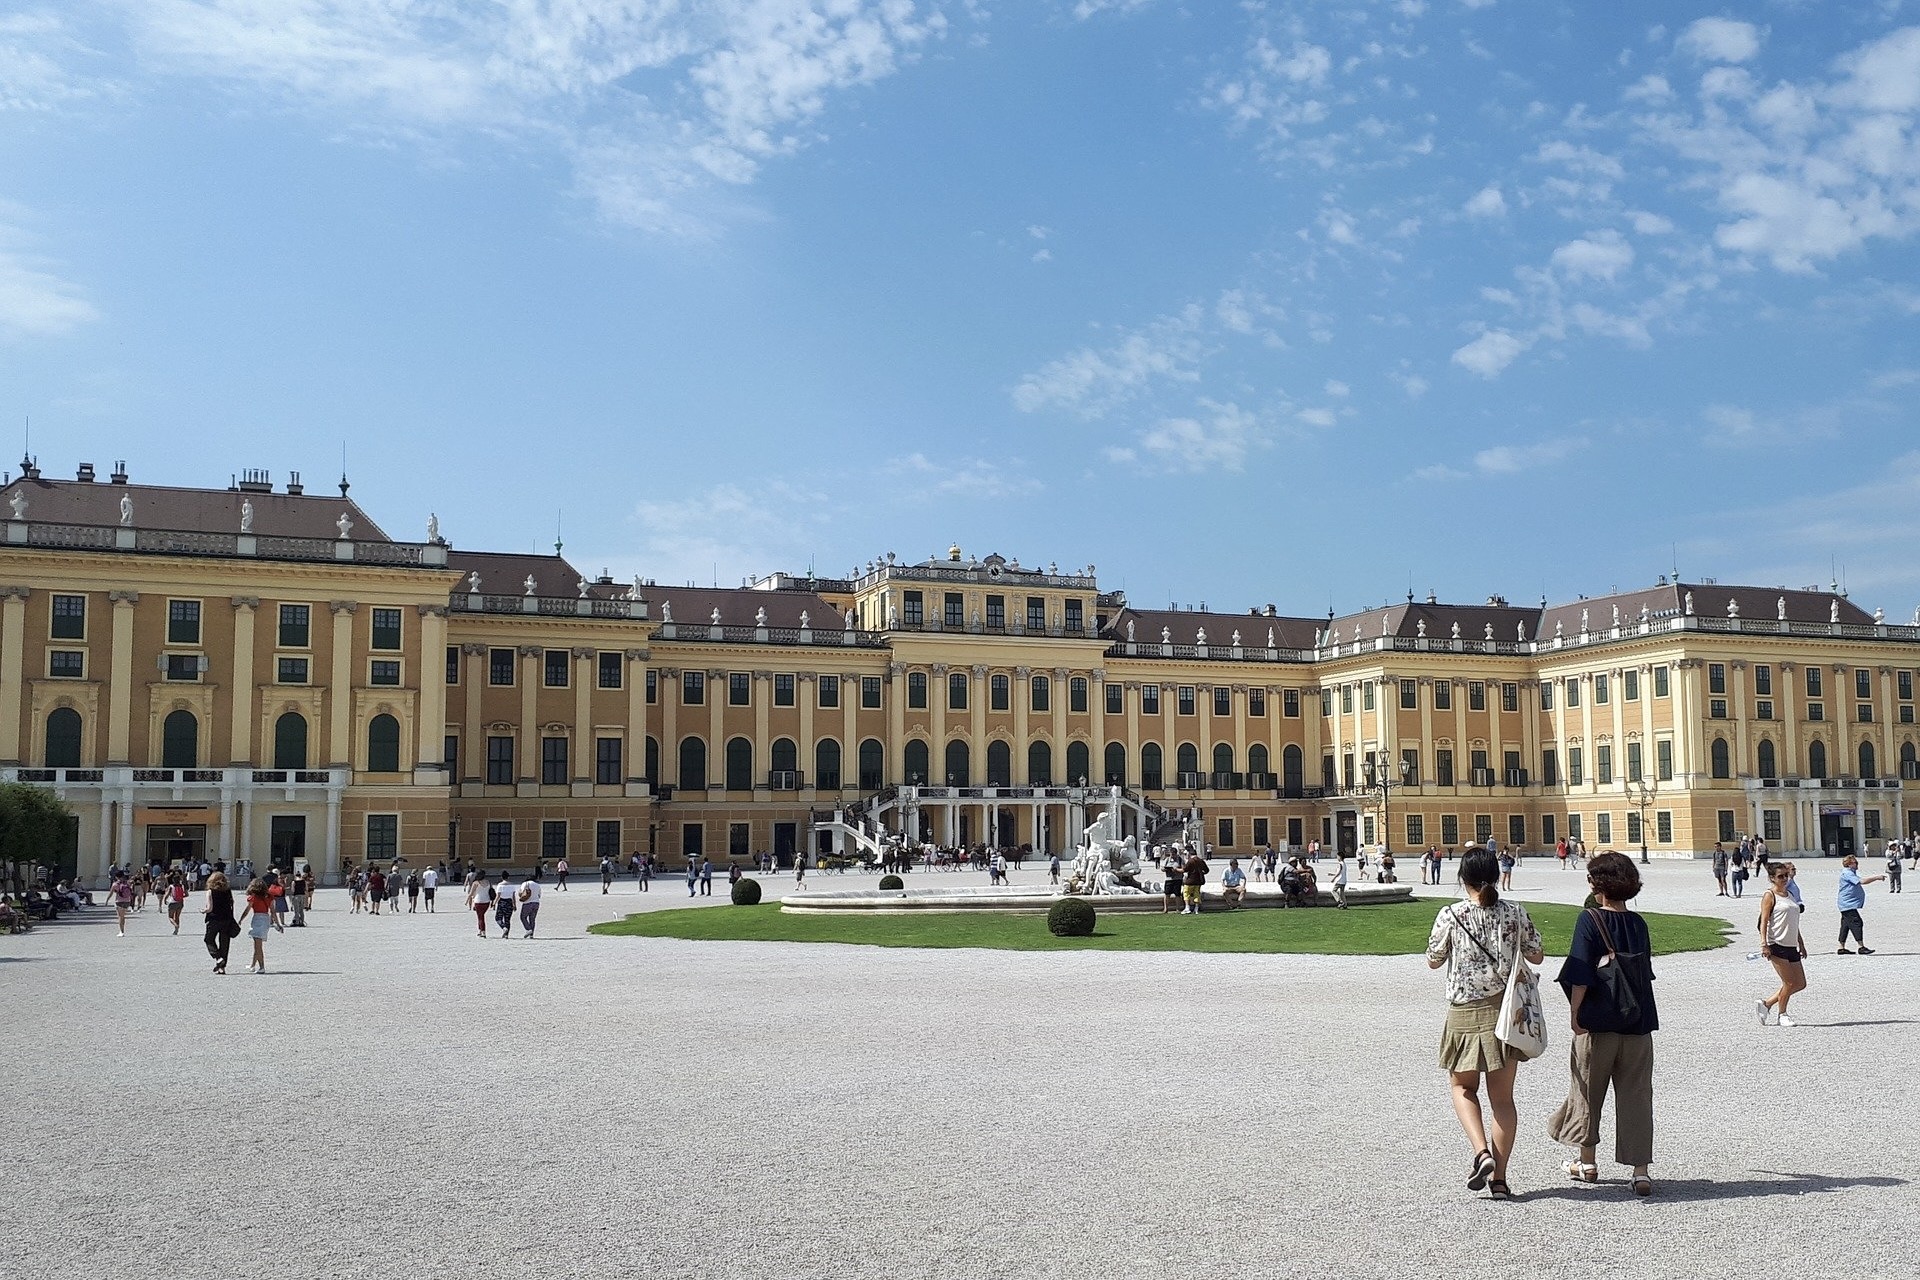 Wien mit dem Schloss Schönbrunn ist eine beliebte Städtereise